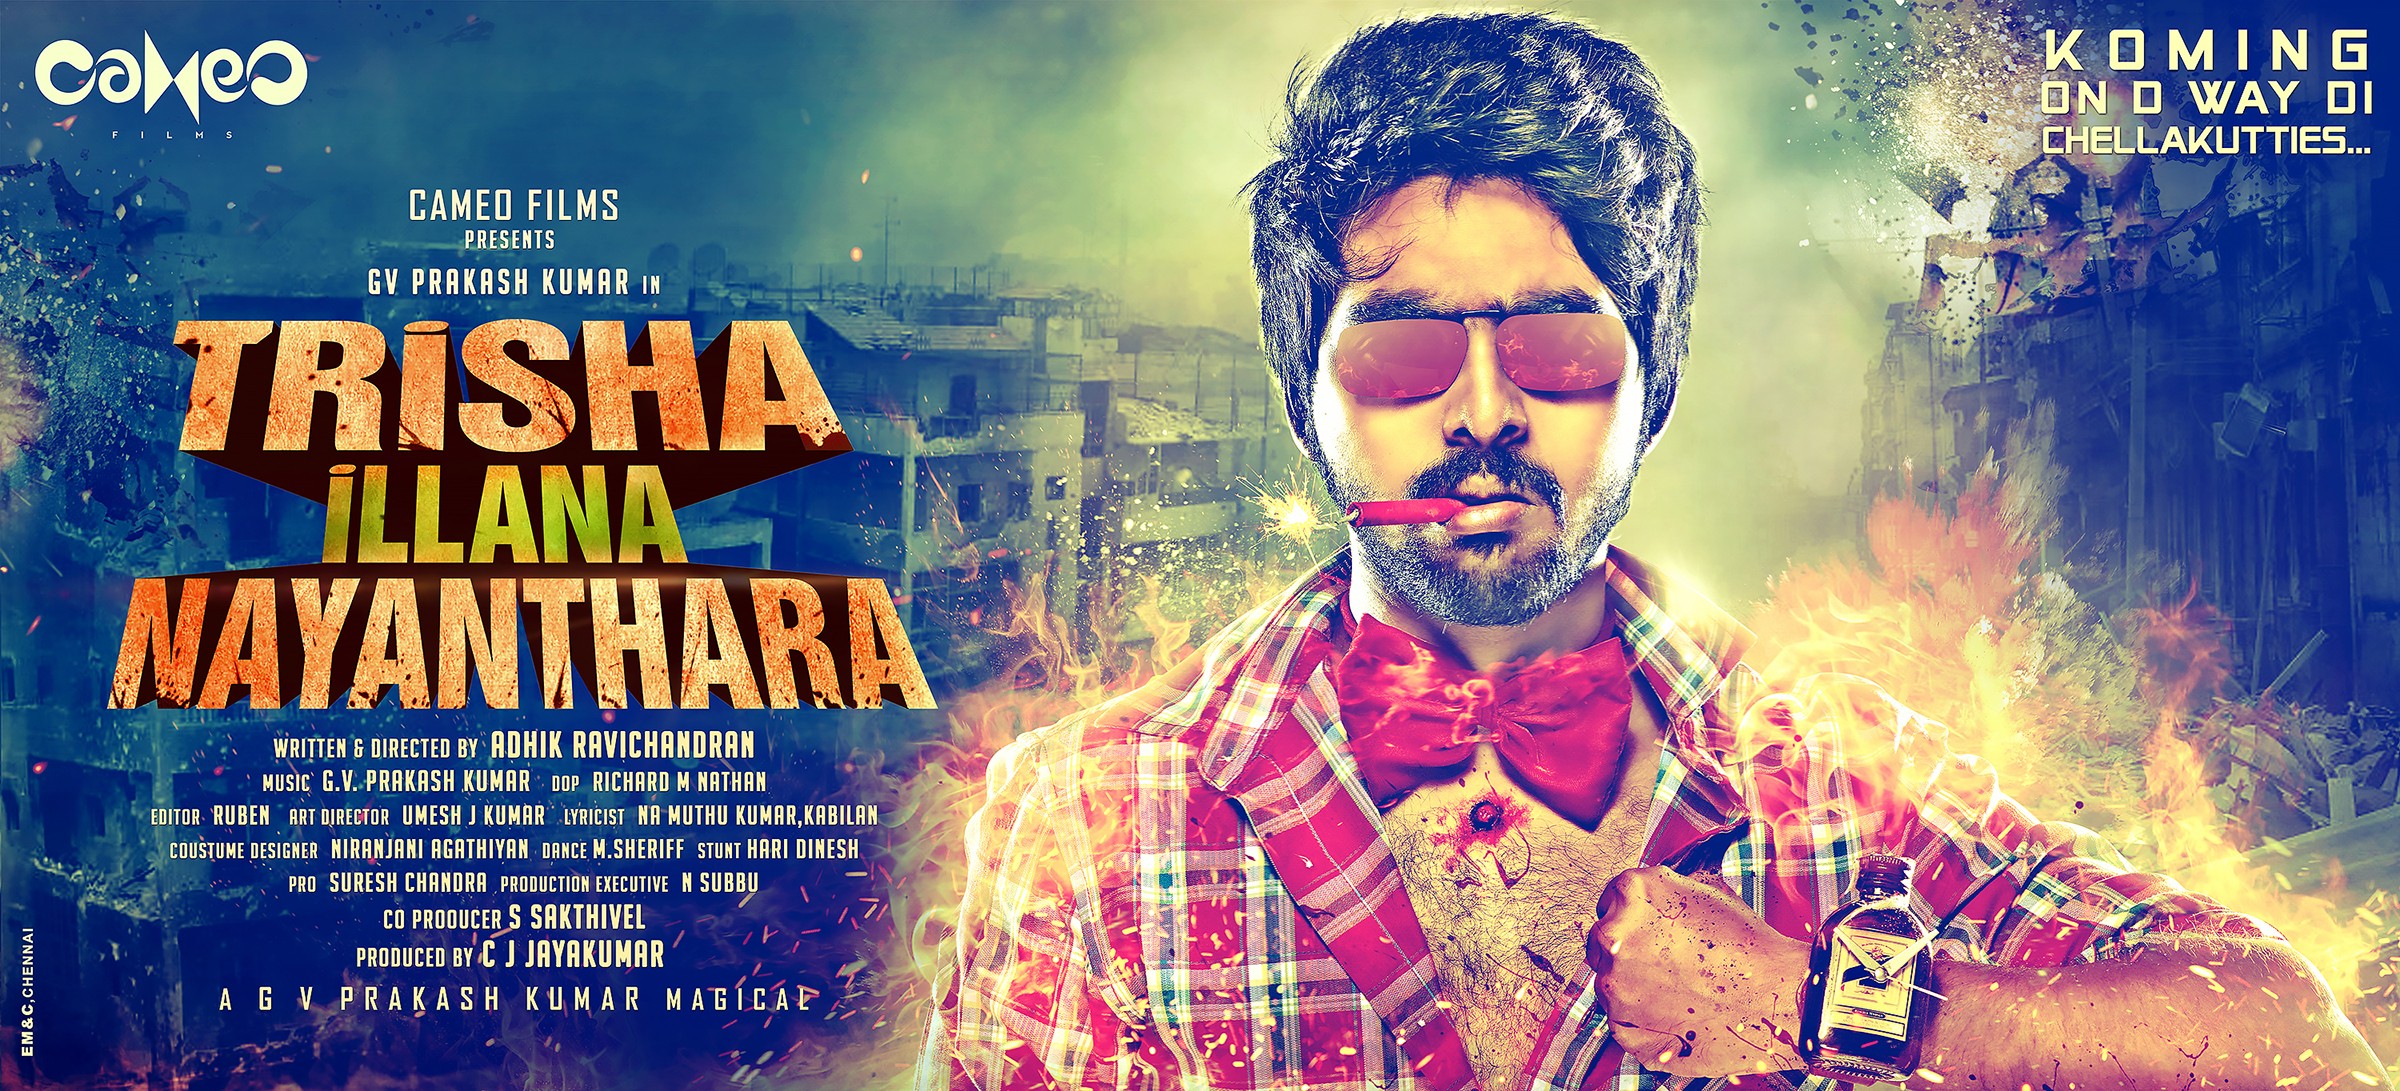 Mega Sized Movie Poster Image for Trisha Illana Nayanthara (#1 of 4)